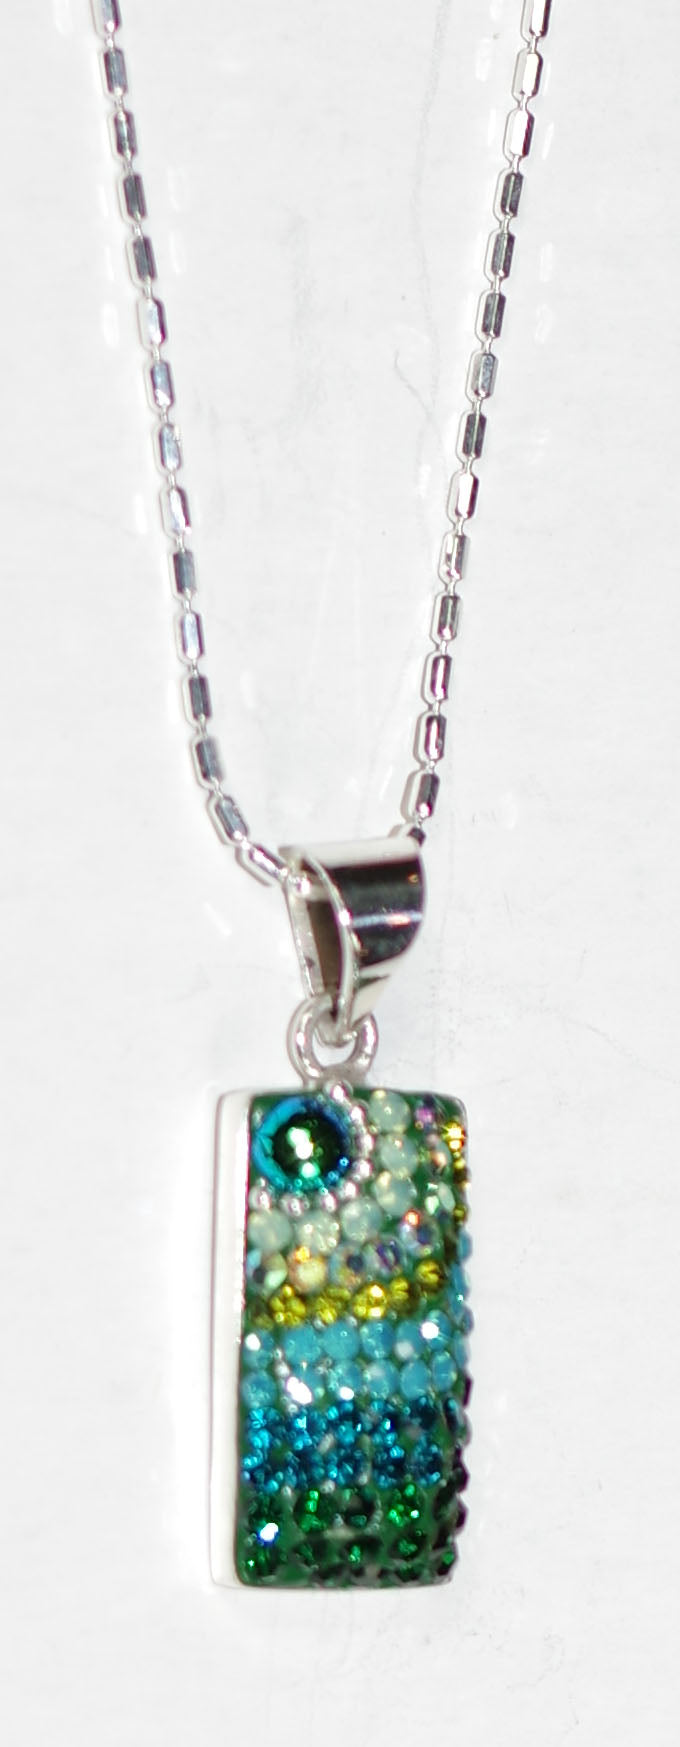 MOSAICO PENDANT PP-8548-E: multi color Austrian crystals in 3/4" solid silver pendant, 18 inch silver chain